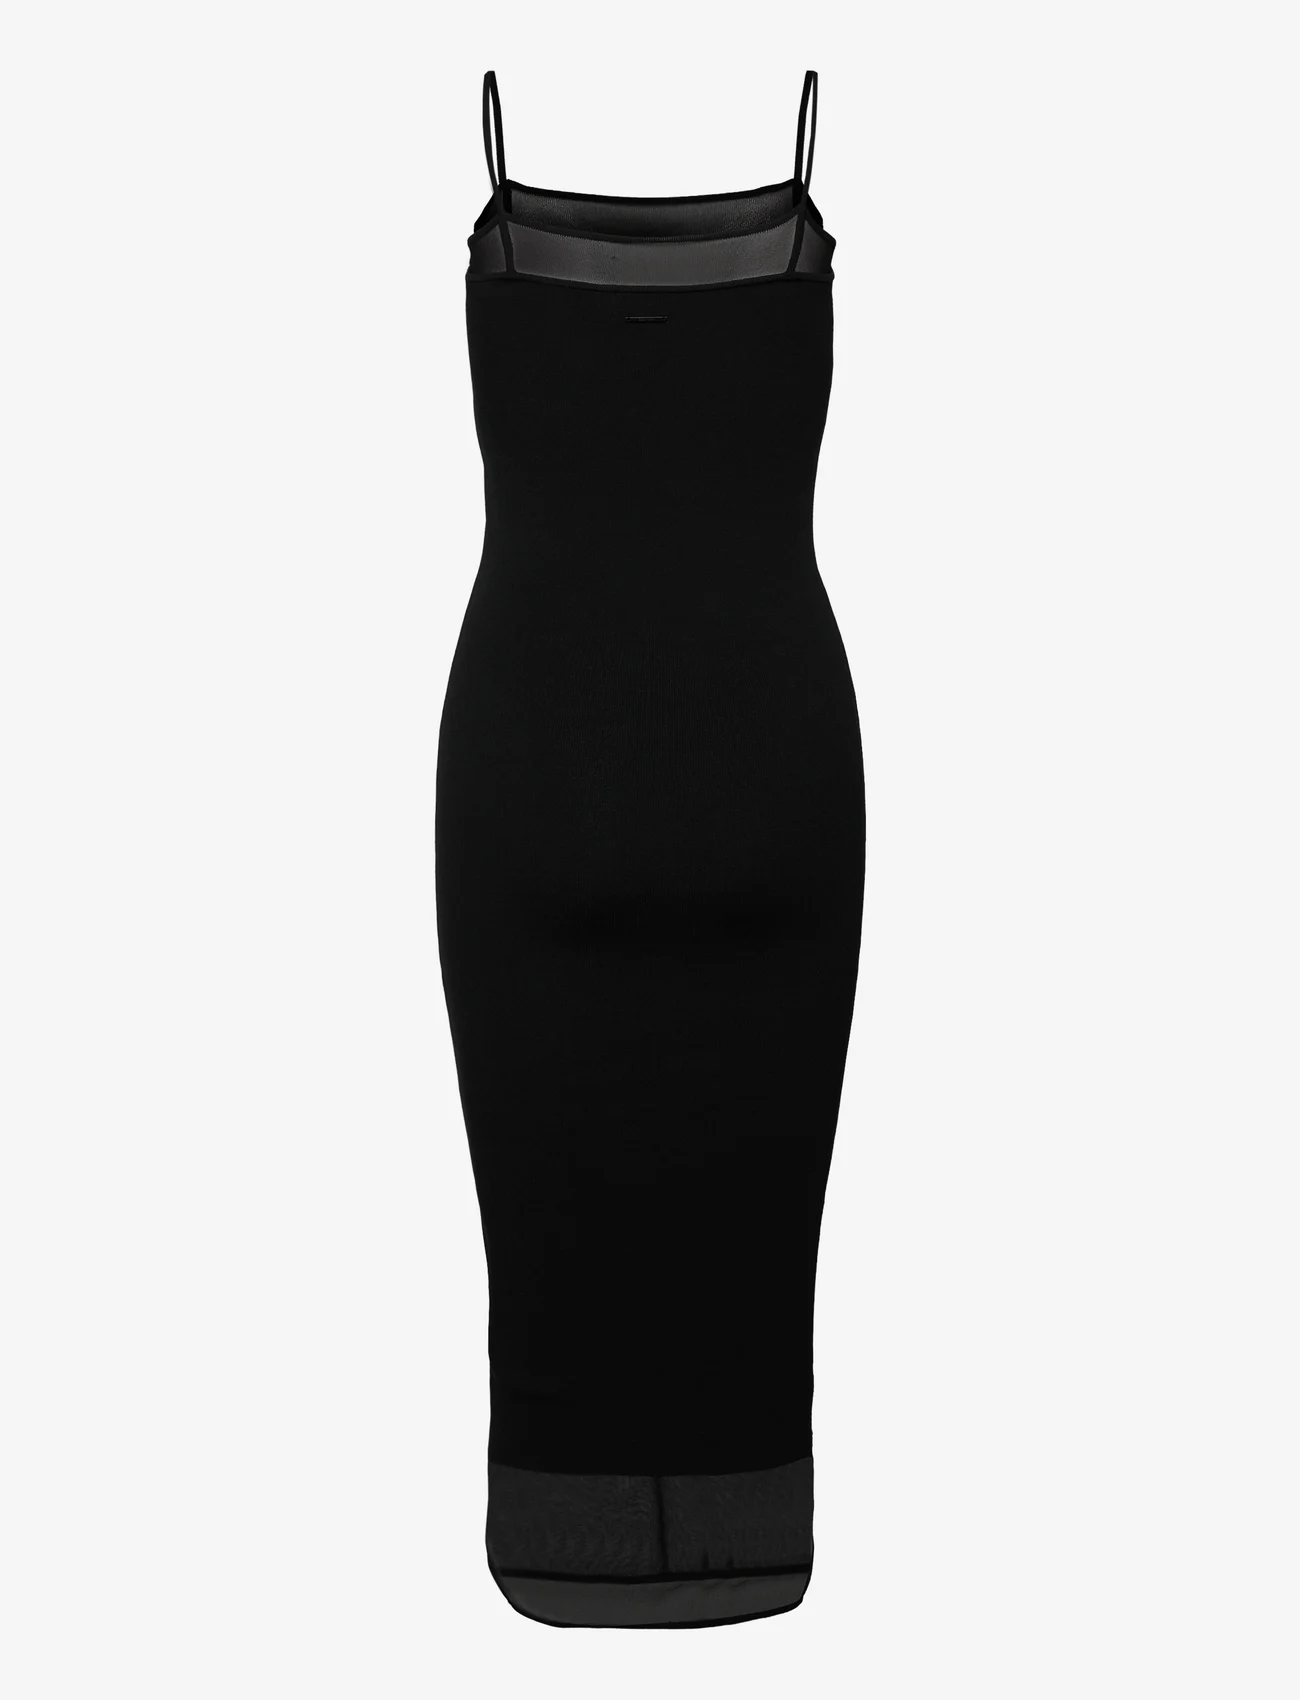 Calvin Klein - SHEER & MATT SLIP DRESS - slip dresses - ck black - 1